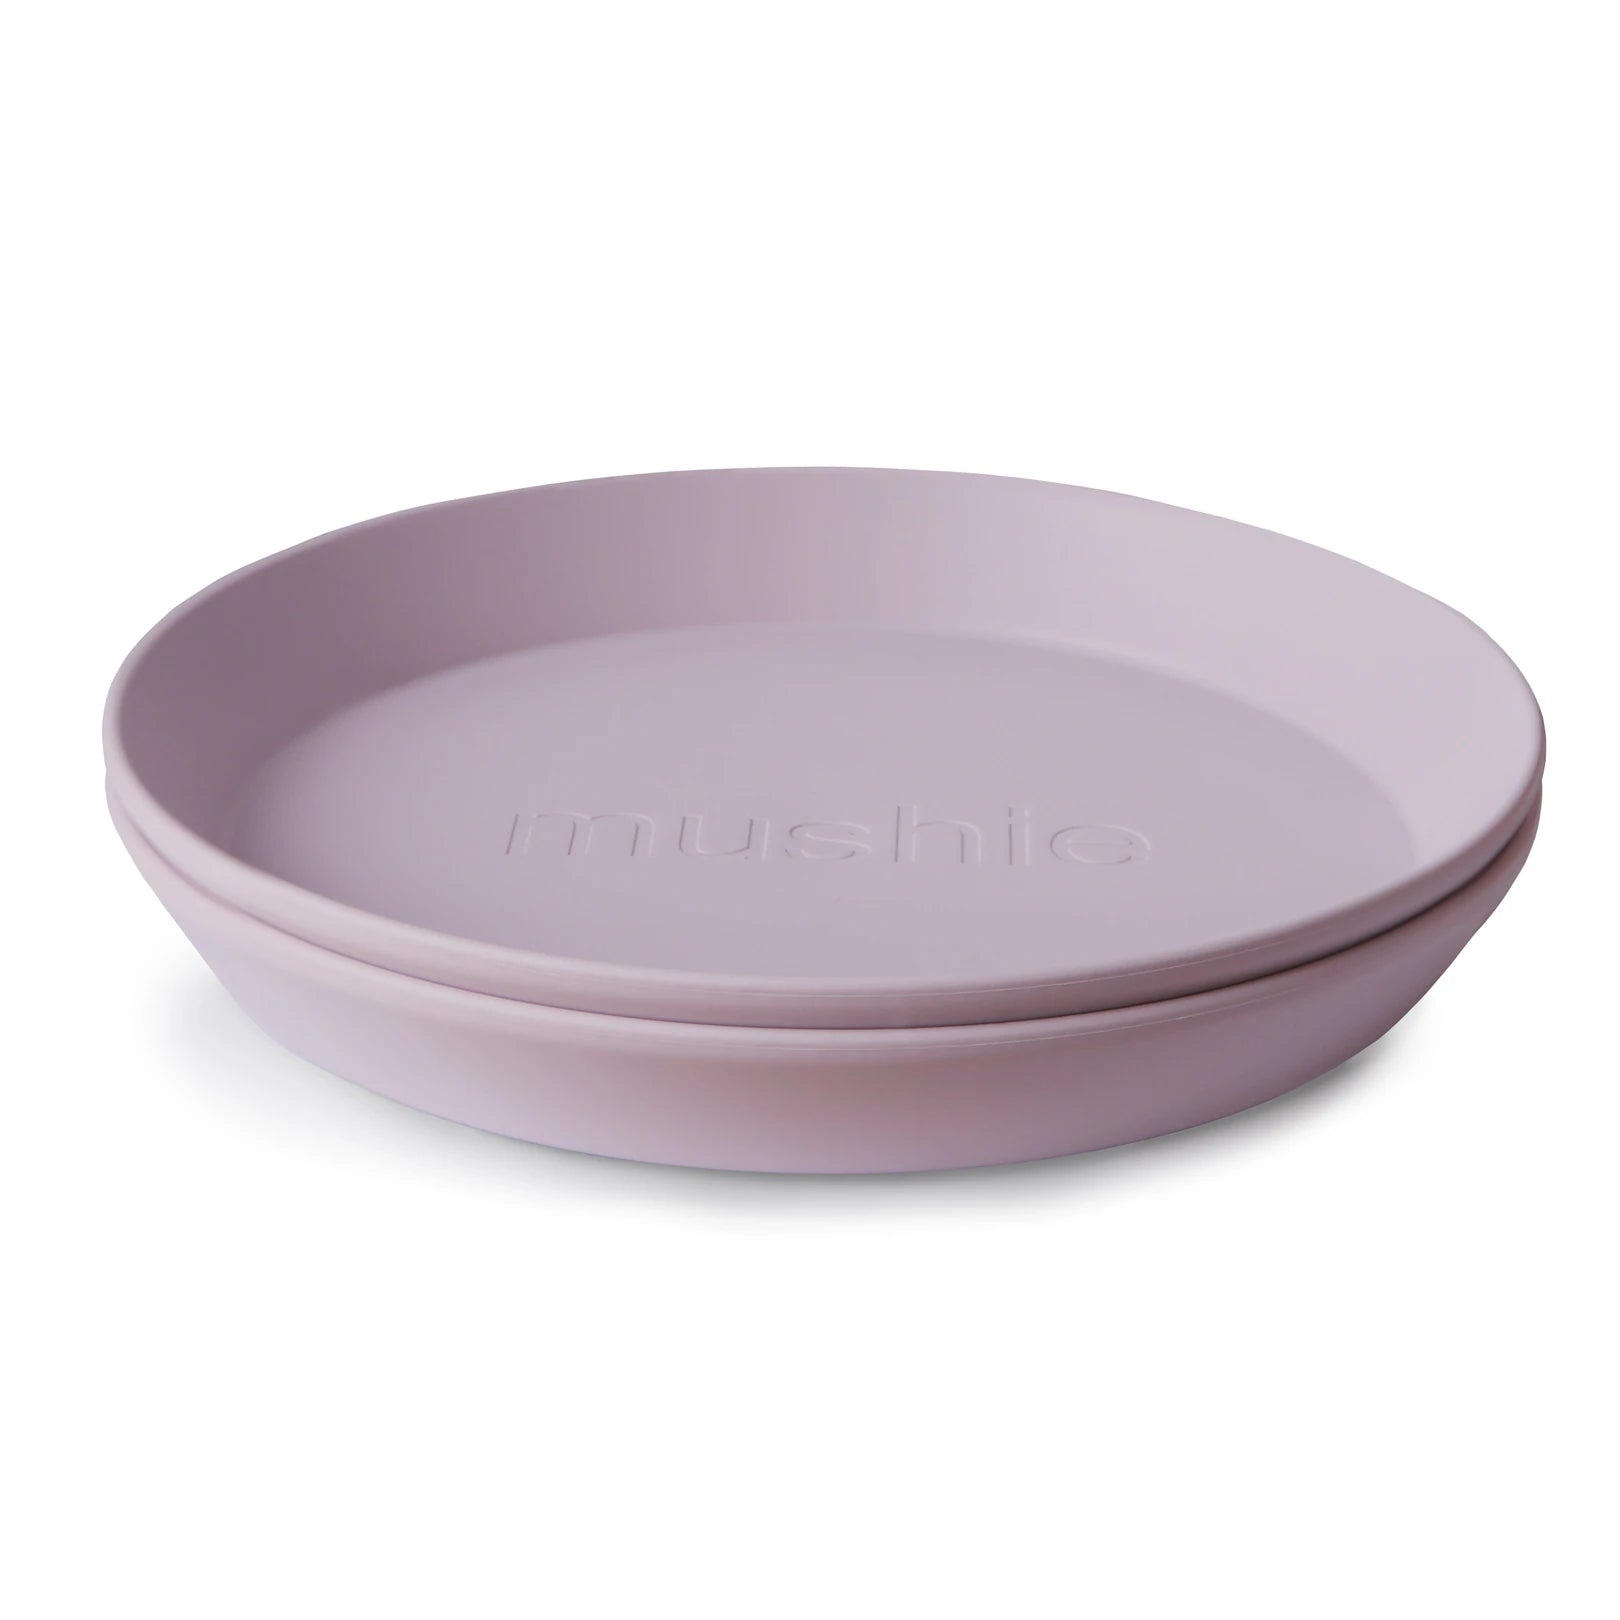 Mushie - round plates (2PCS) - soft lilac - Hyggekids